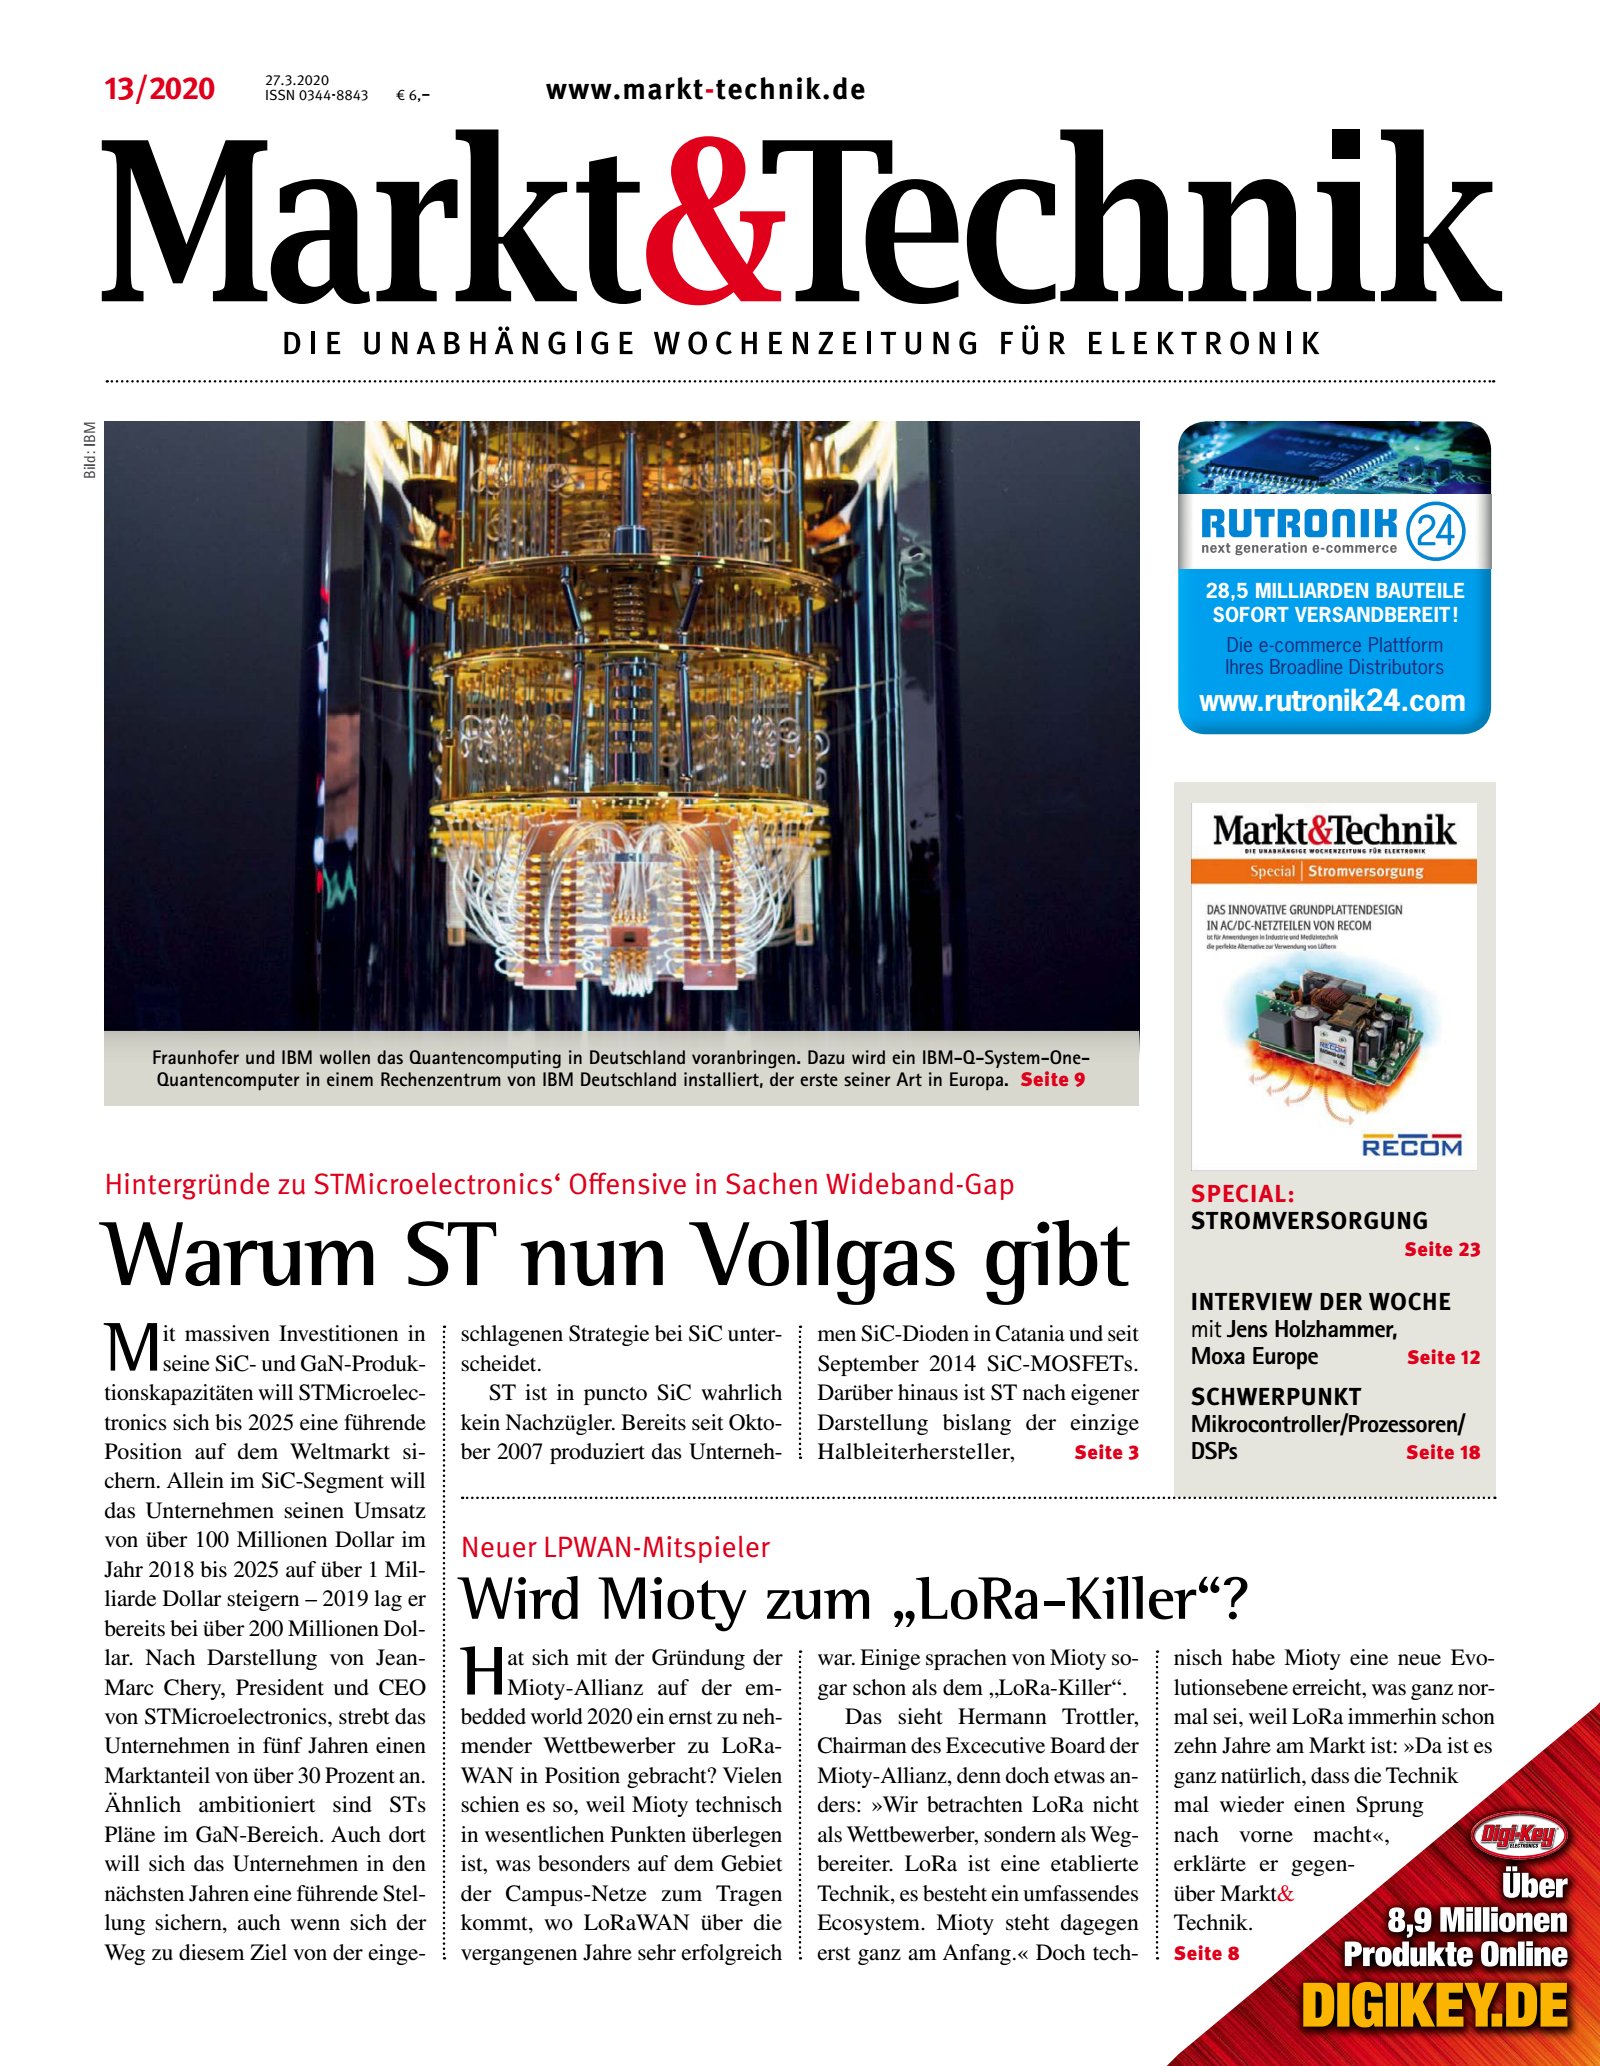 Markt&Technik 13/2020 Digital